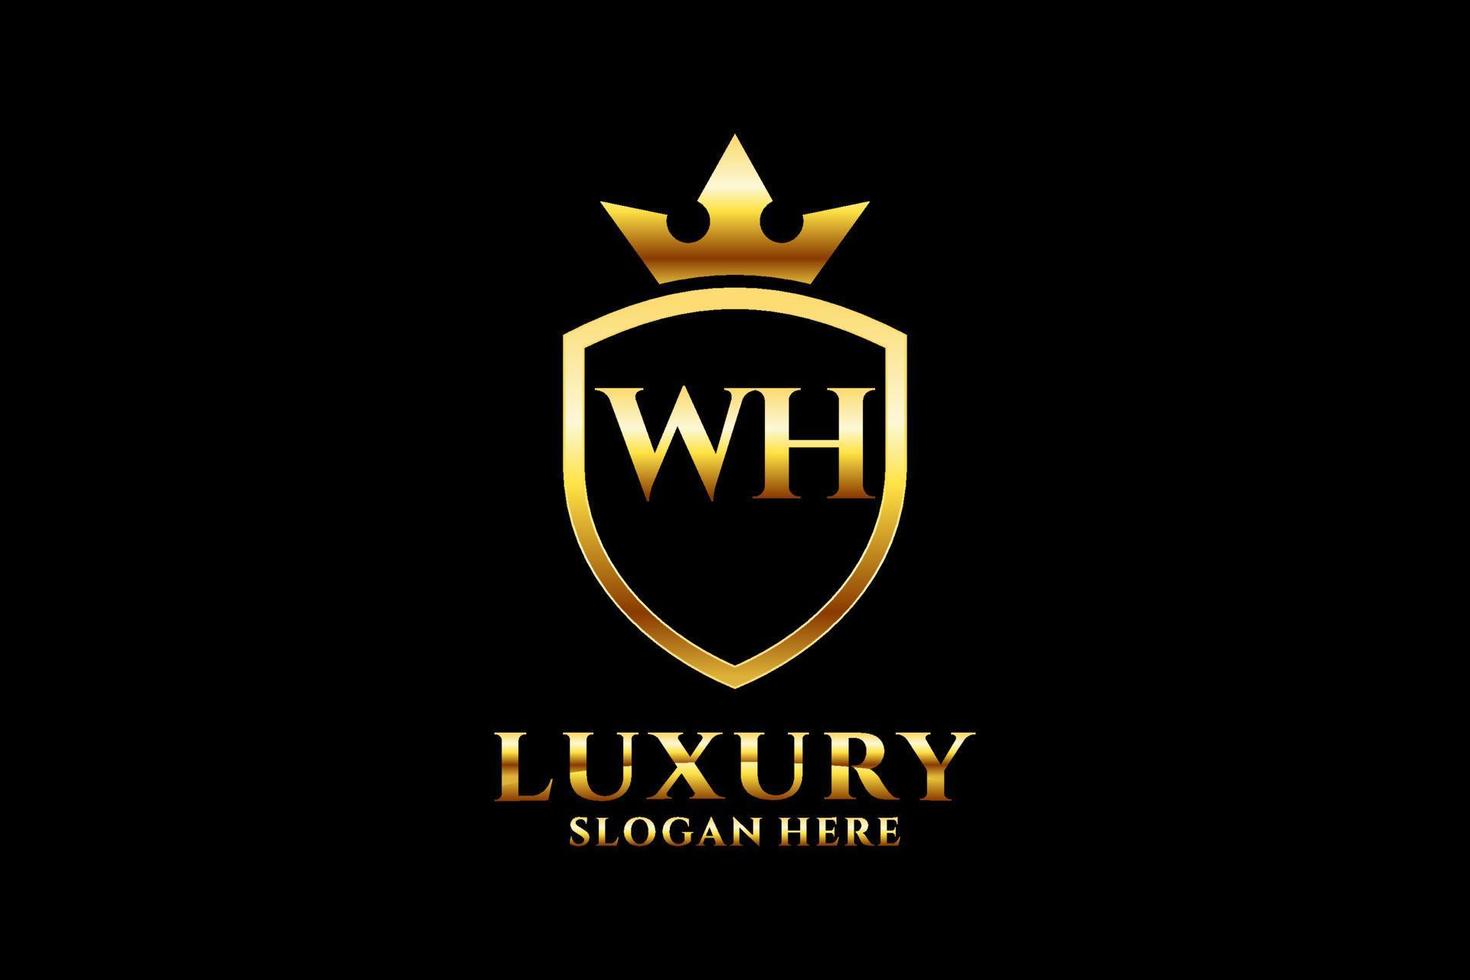 logotipo de monograma de lujo inicial wh elegante o plantilla de insignia con pergaminos y corona real - perfecto para proyectos de marca de lujo vector